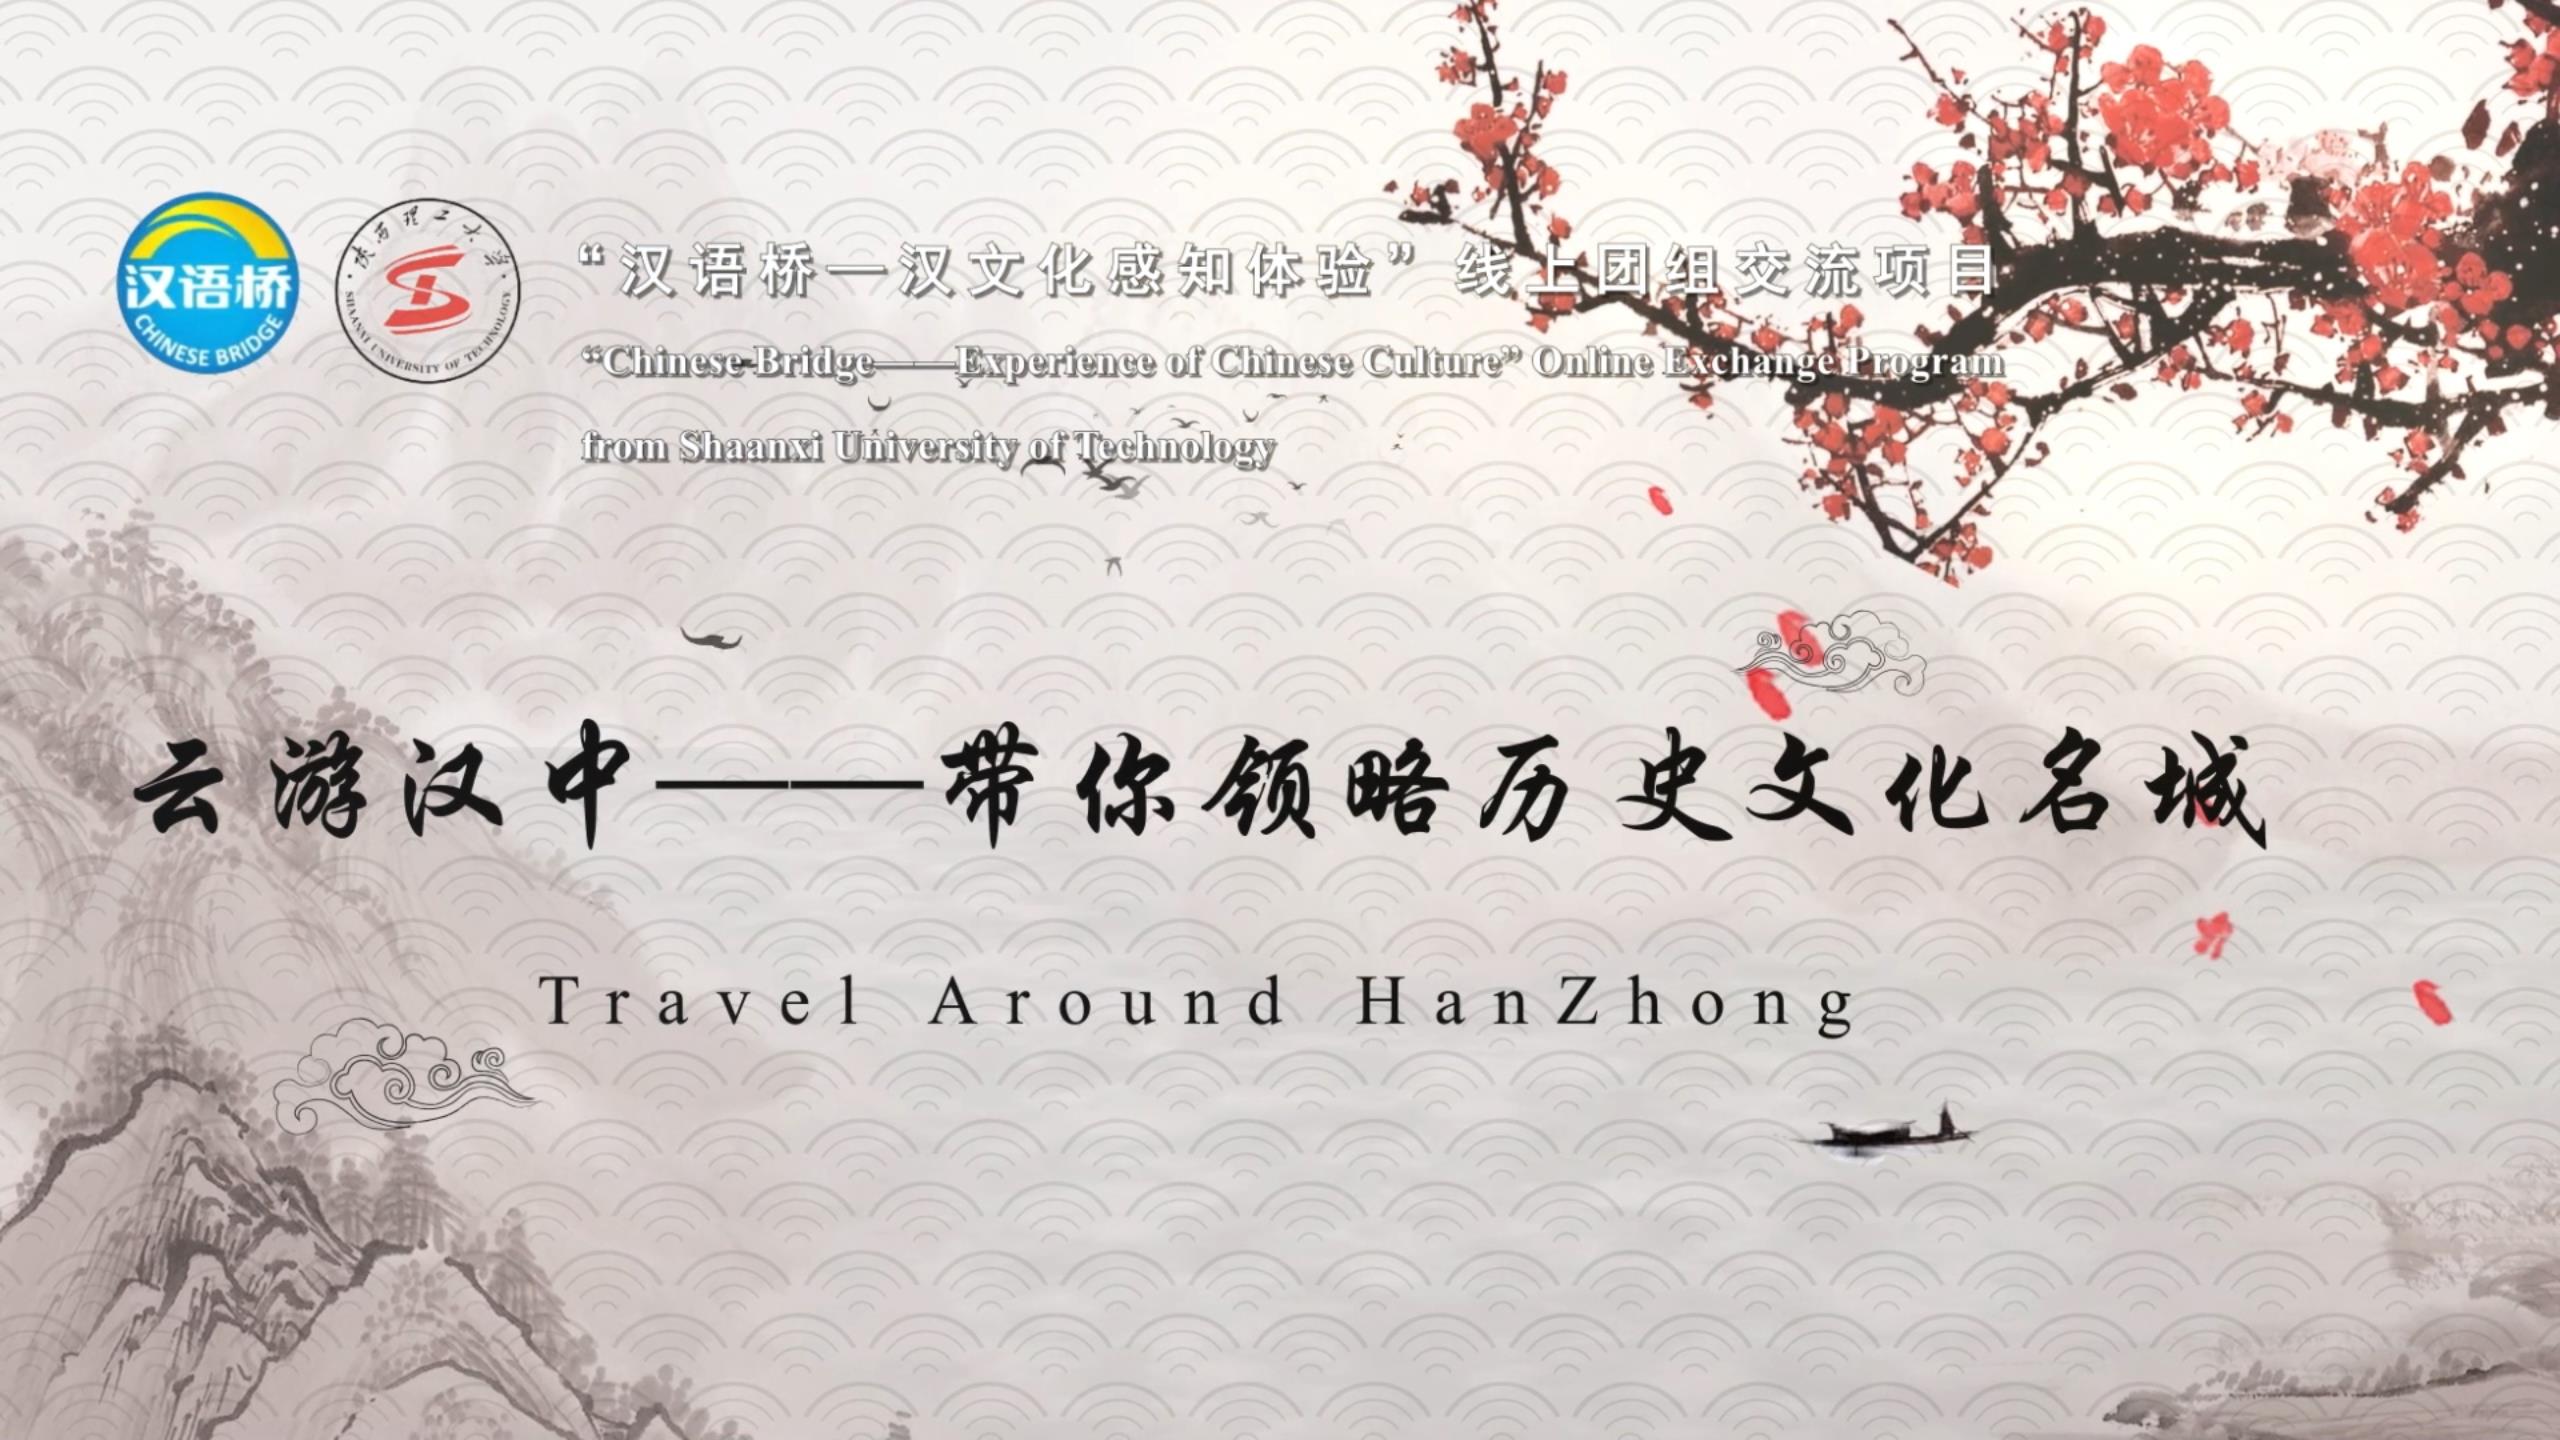 Travel Around Hanzhong